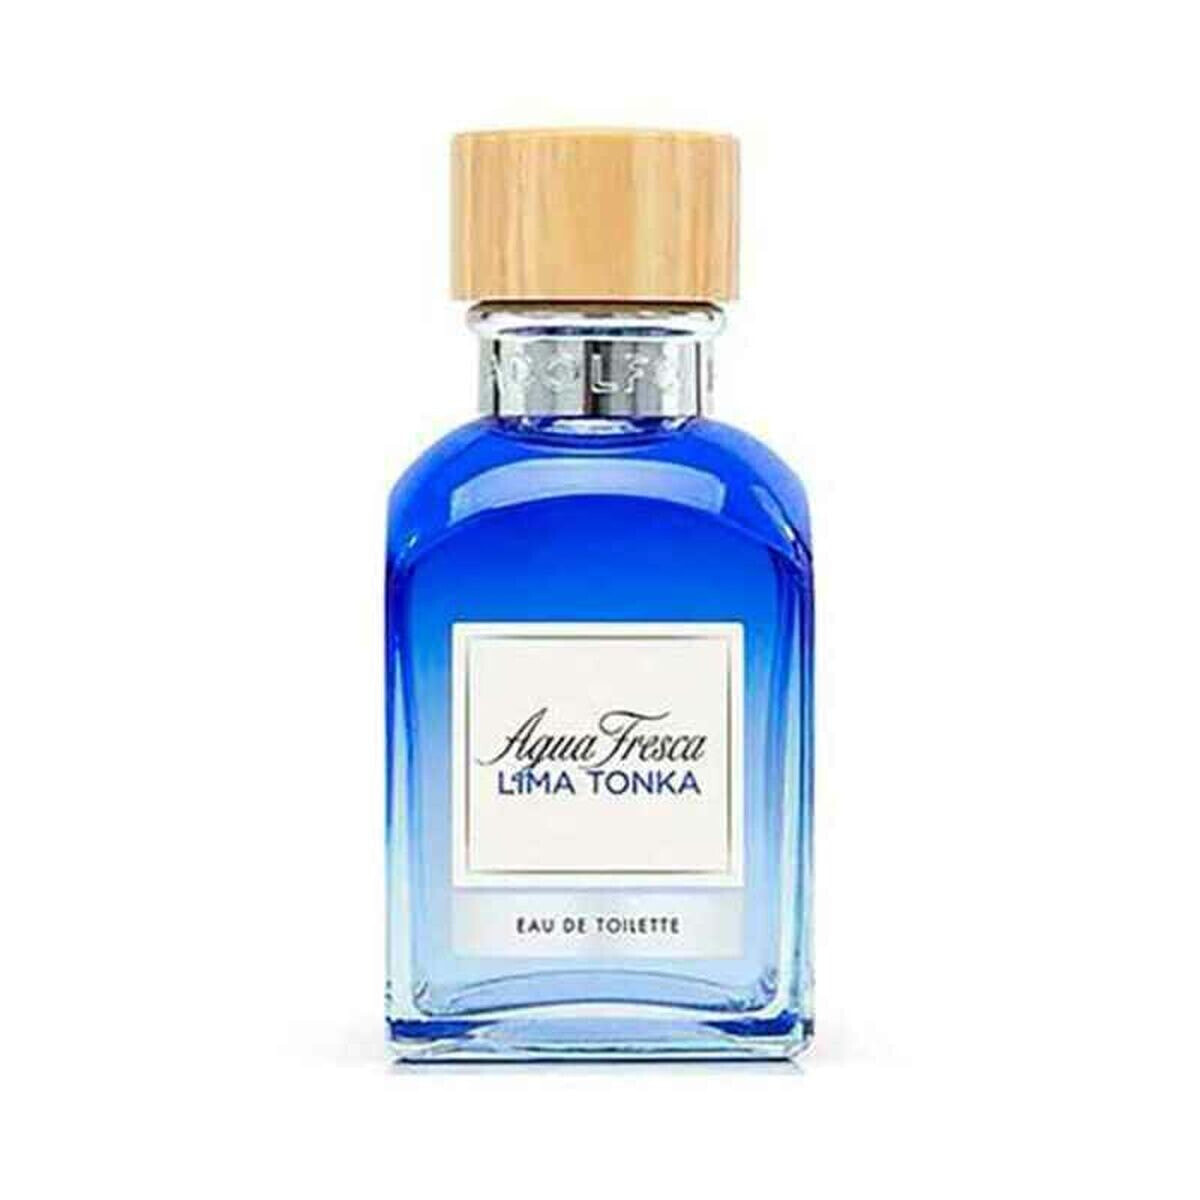 Men's Perfume Adolfo Dominguez Adolfo Dominguez EDT 120 ml